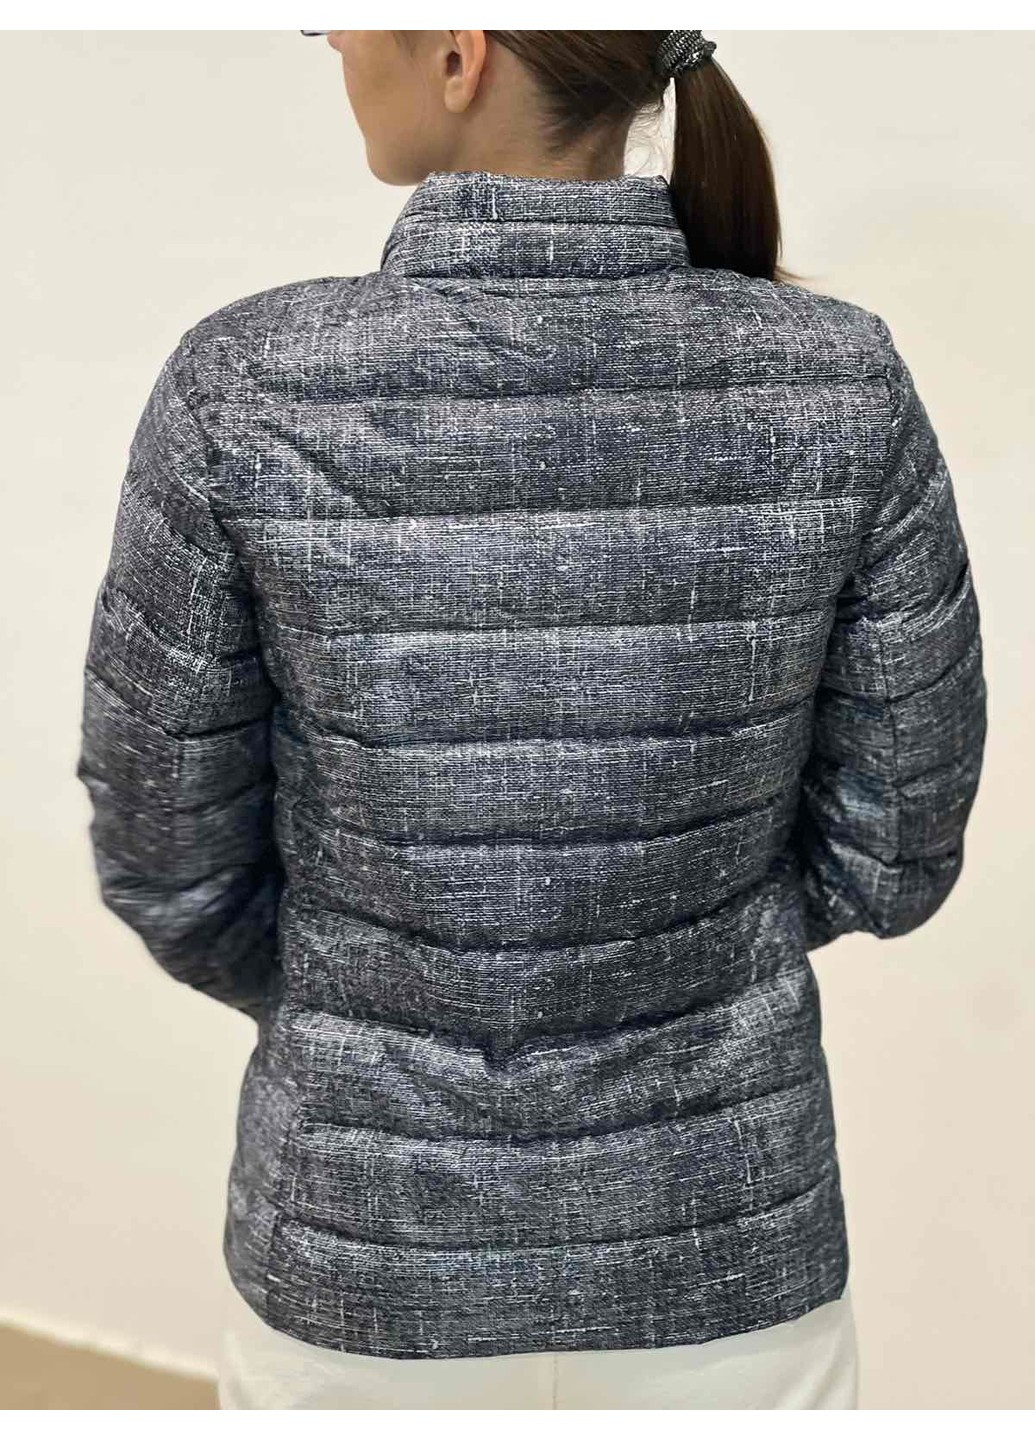 Темно-сіра демісезонна жіноча стьобана куртка м&s (56097) 8 темно-сіра M&S